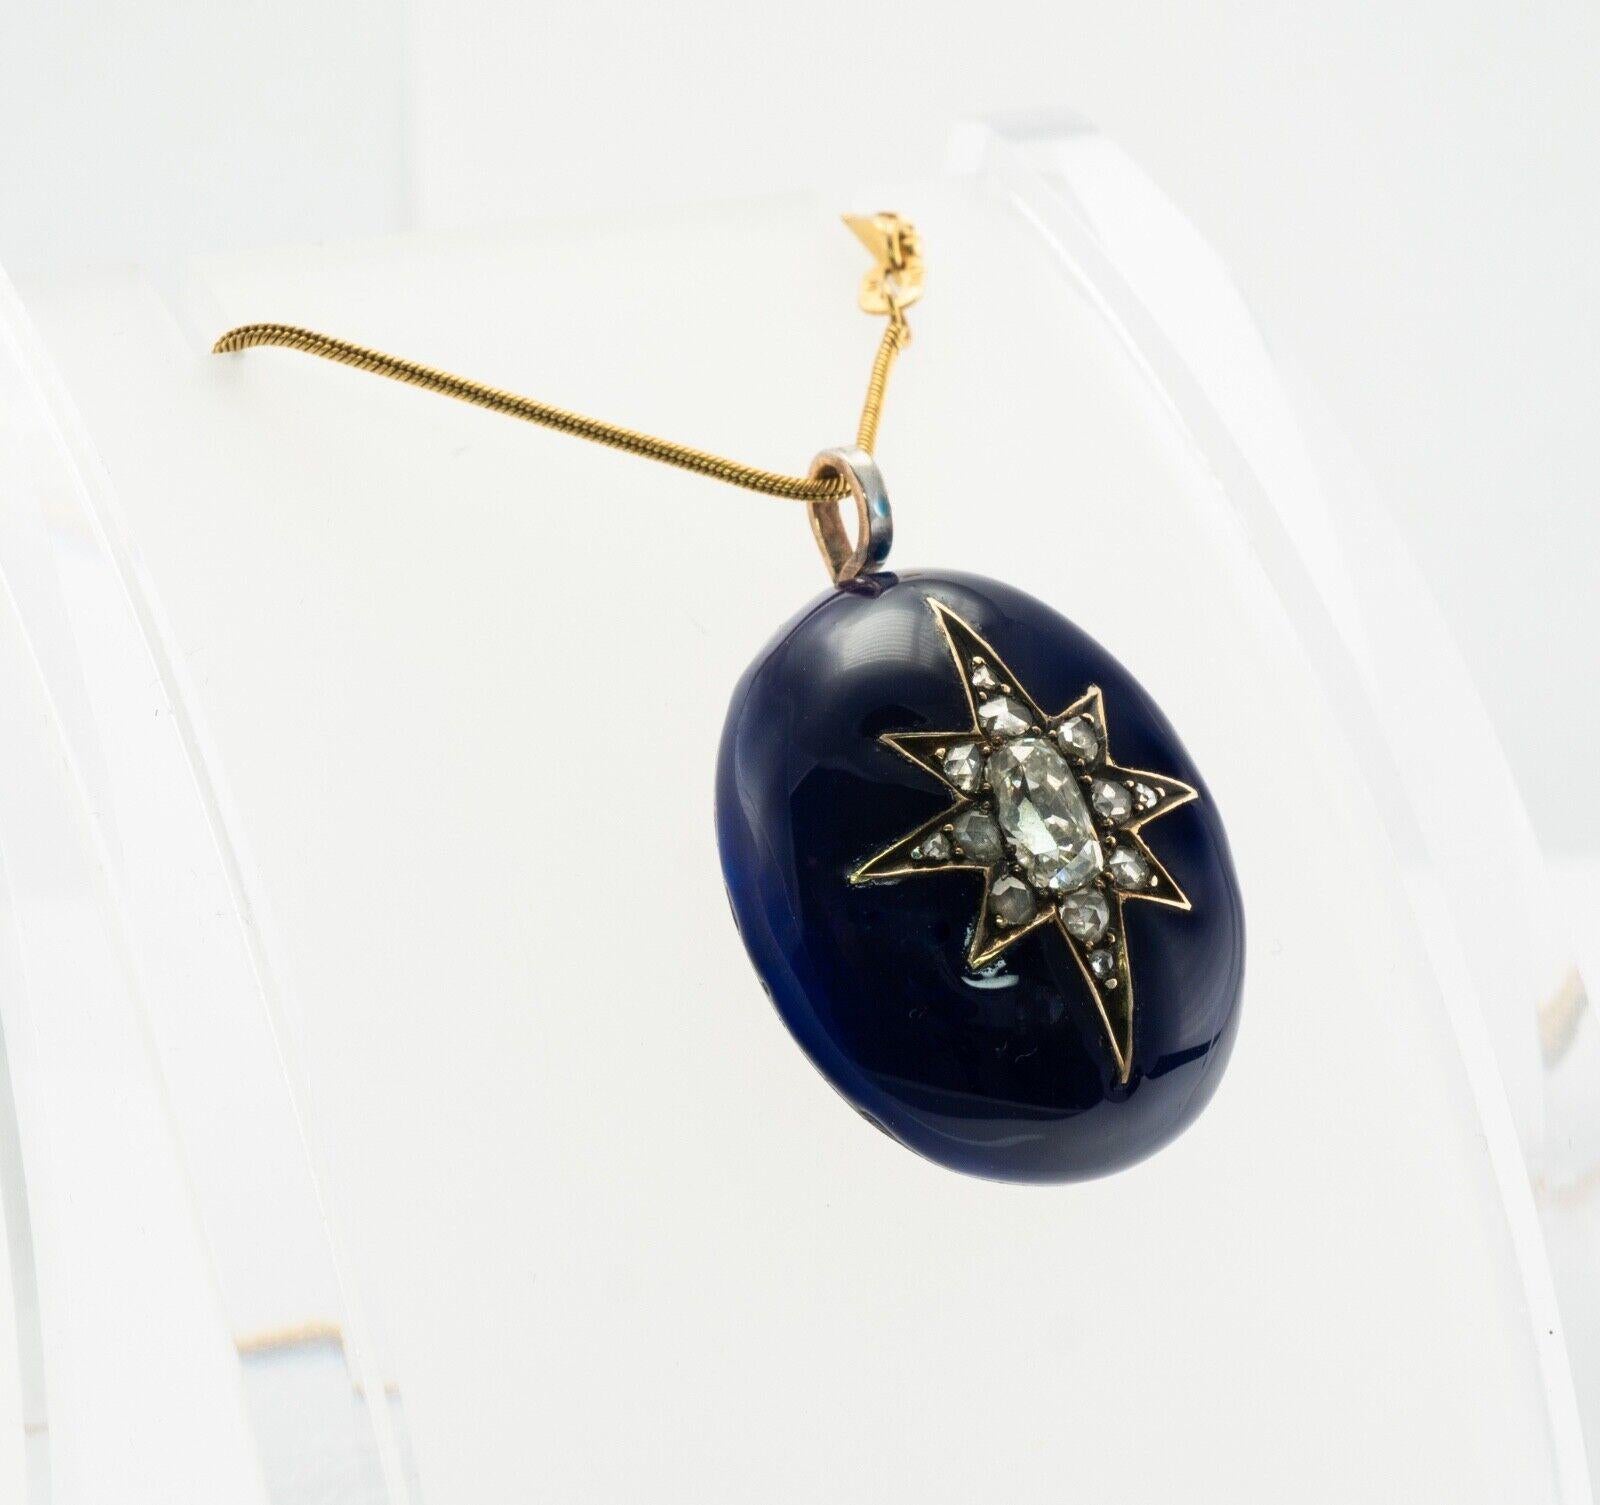 Viktorianischer Diamant Stern Blau Emaille Anhänger 14K Gold Antik ca. 1890

Diese absolut wunderschöne antike circa 1890er Anhänger ist fein in 14K Gelbgold gefertigt (sorgfältig getestet und garantiert). Der achtzackige Stern aus königsblauer